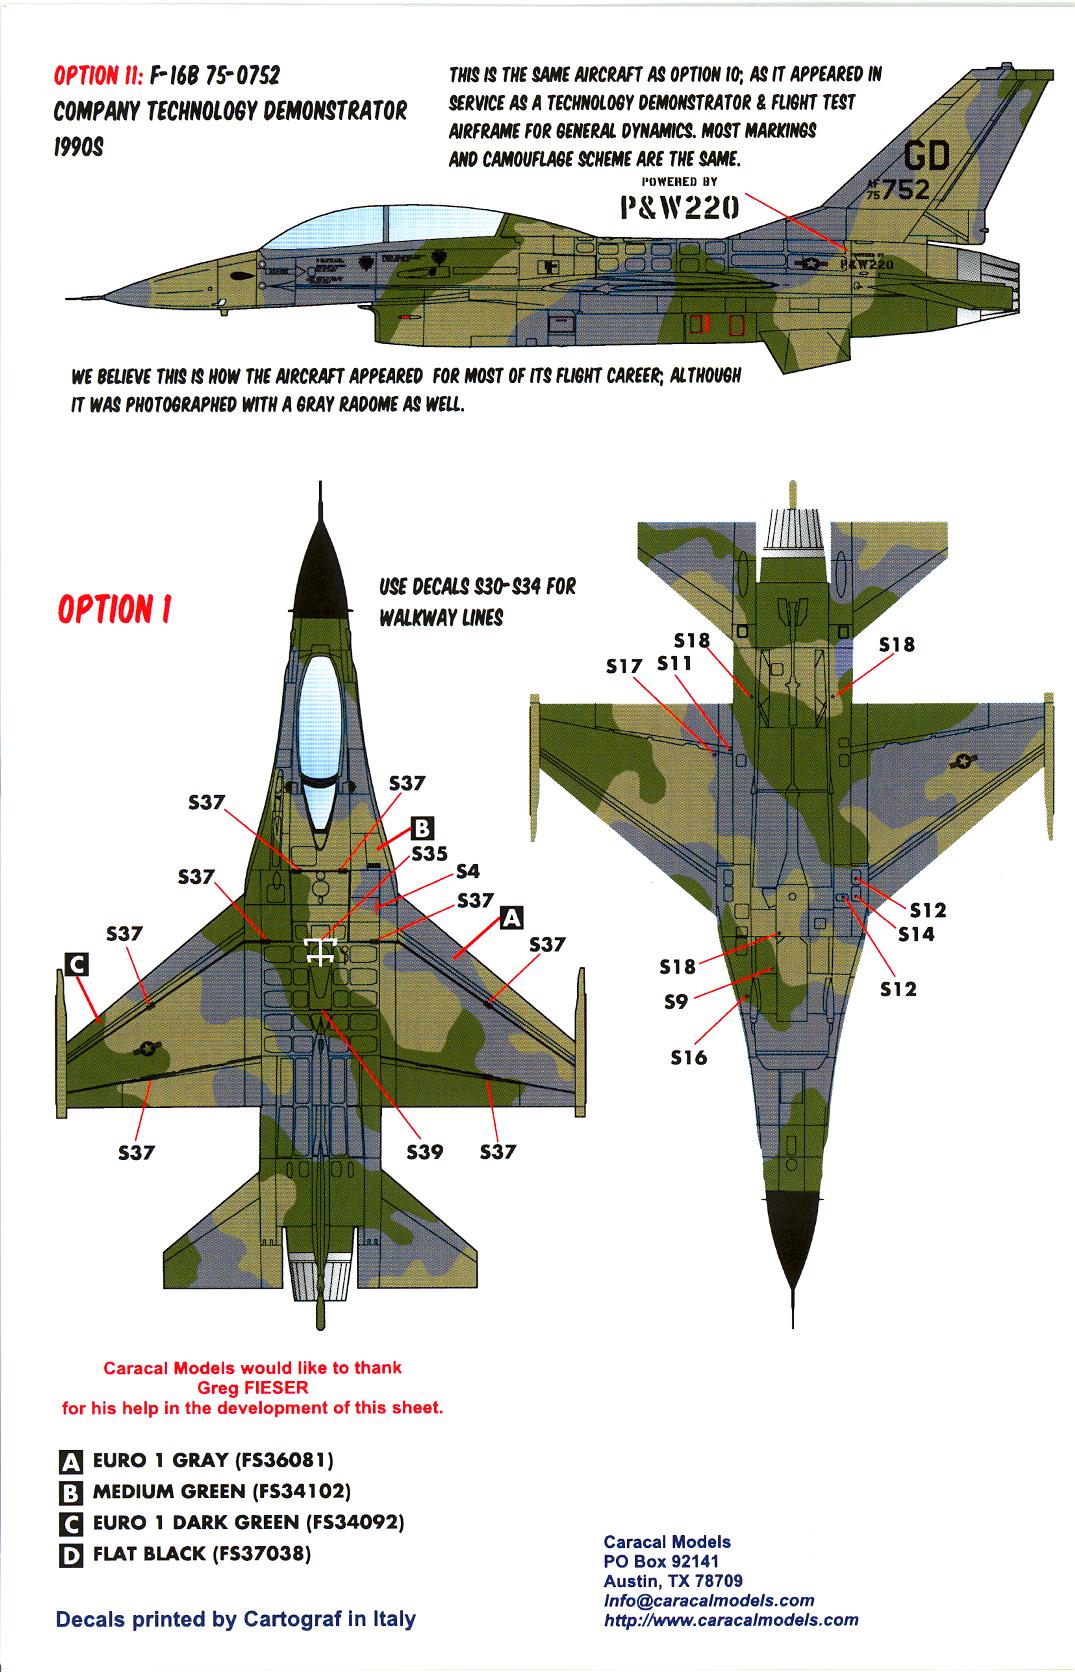 Caracal Decals 1/48 F-16 VIPER CAS CLOSE AIR SUPPORT TRIALS AIRCRAFT